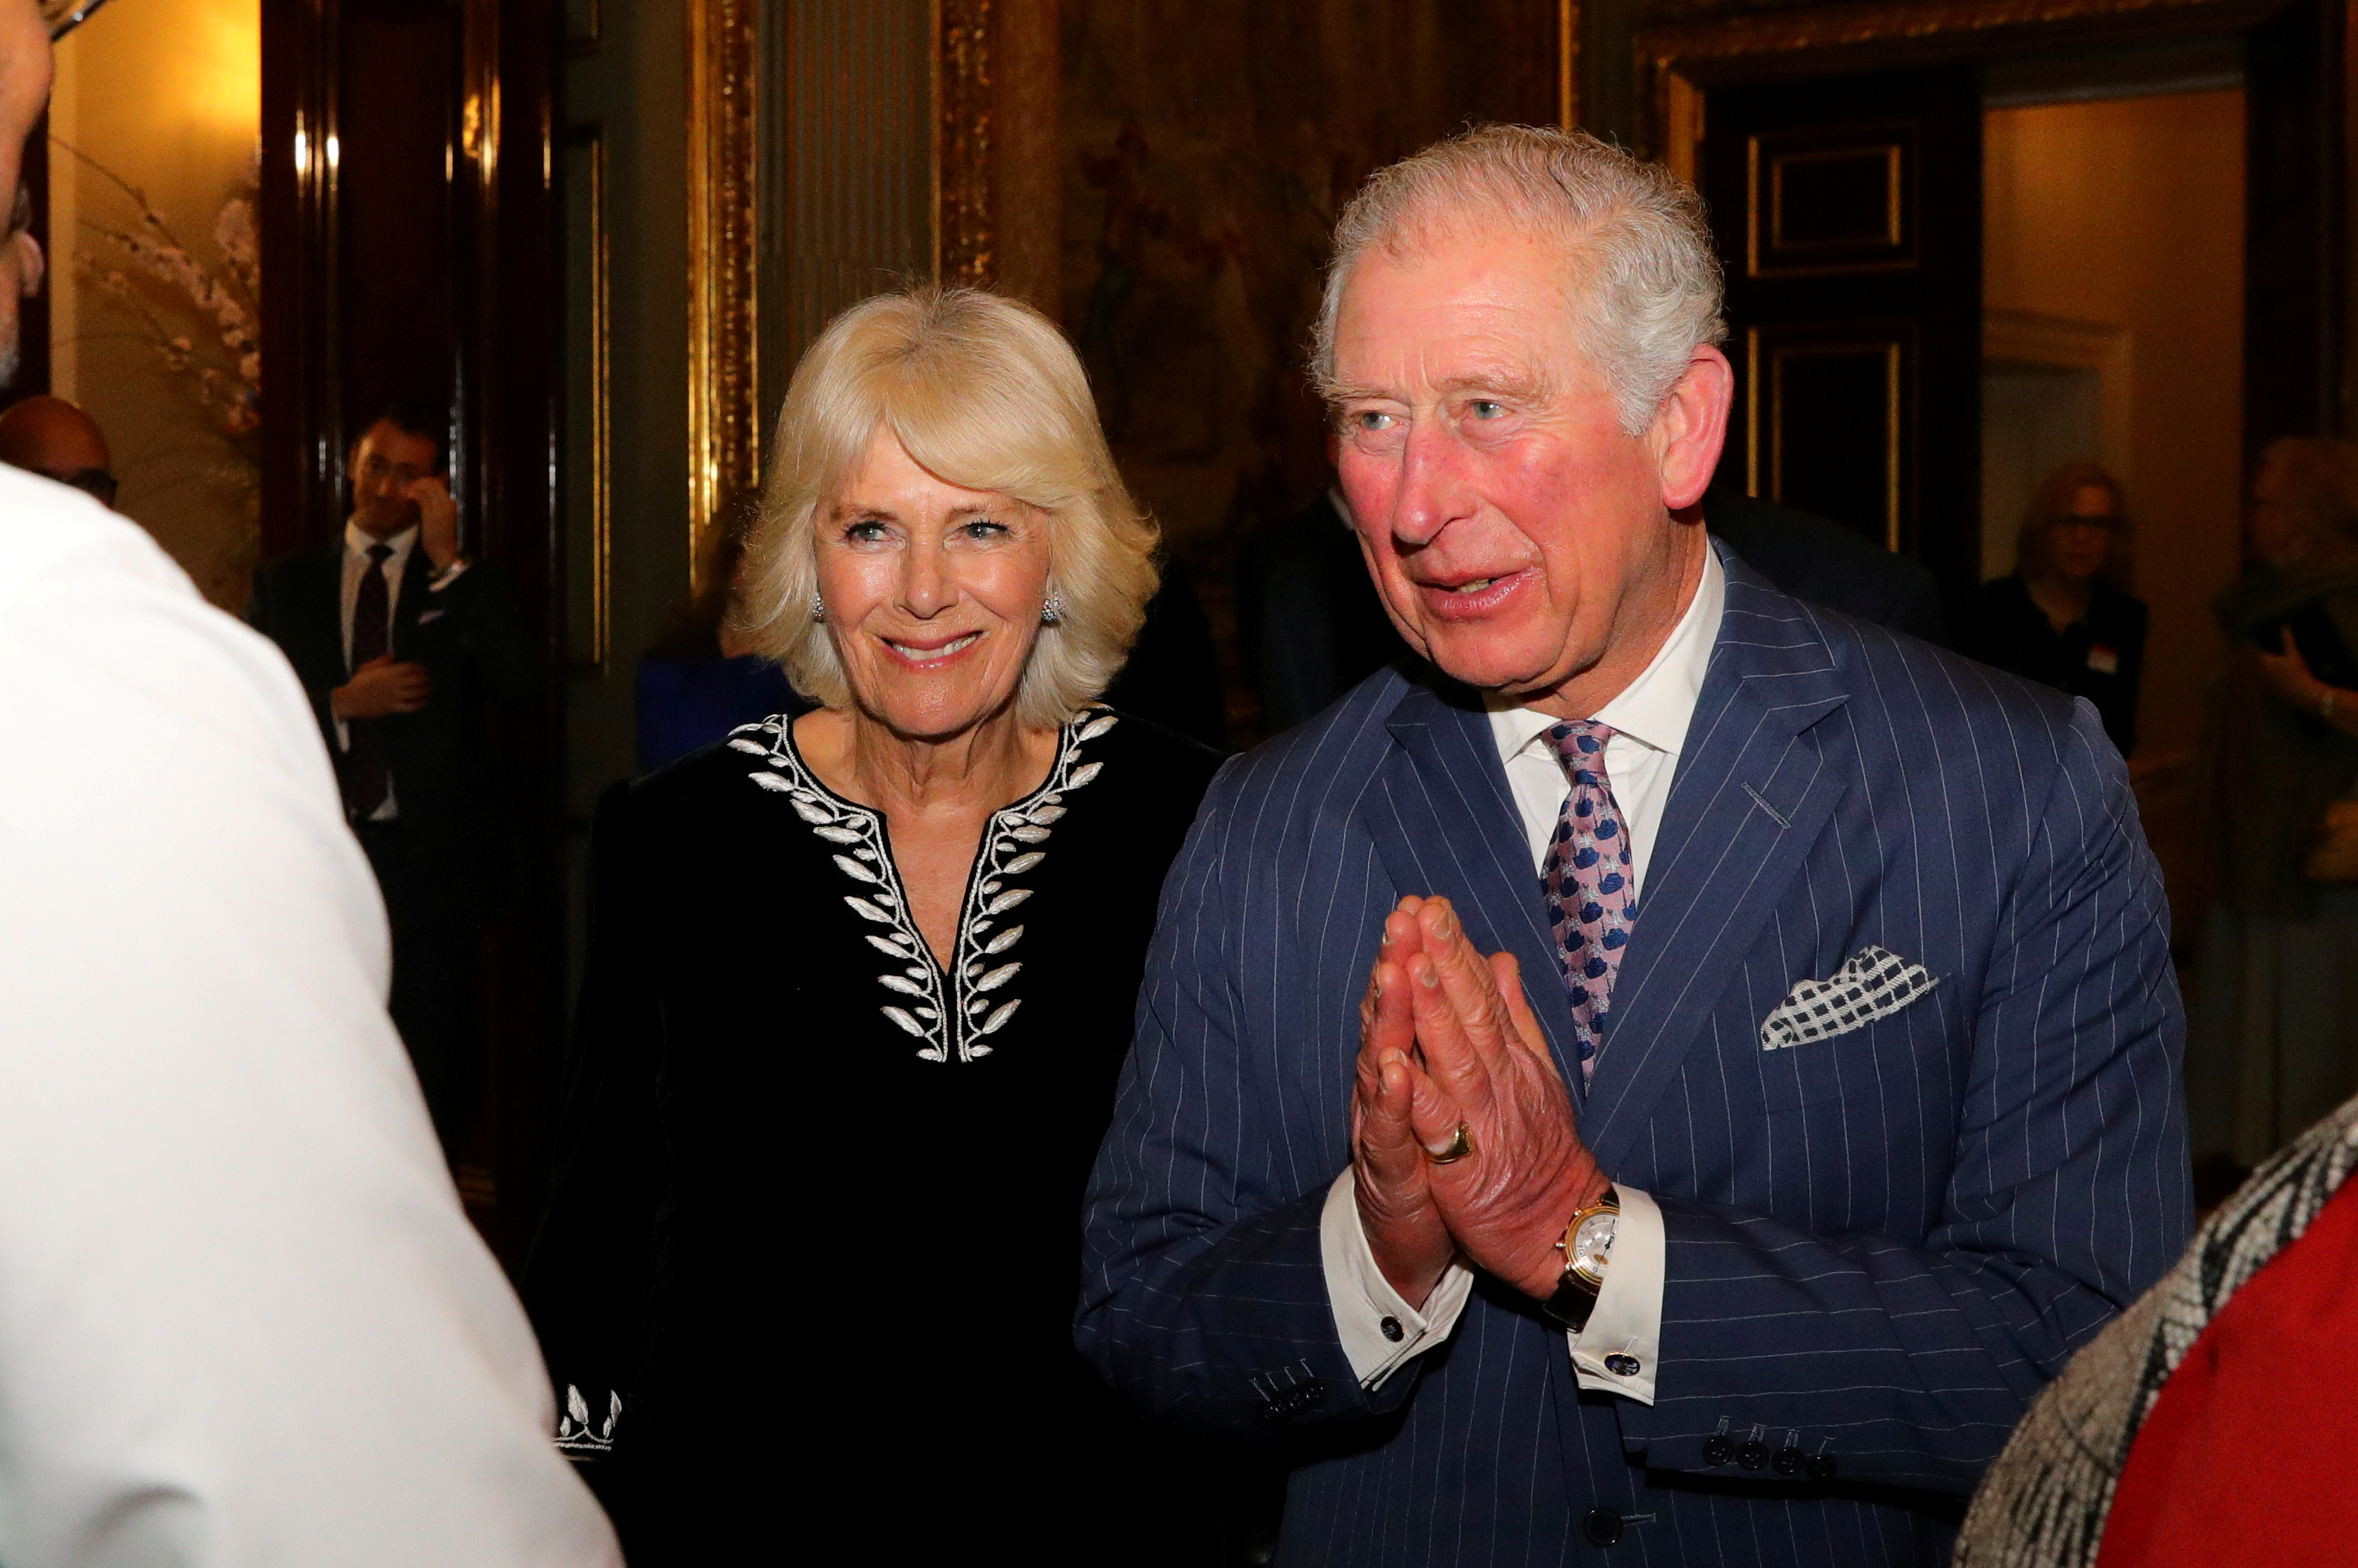 El príncipe Carlos insta a “esperar mejores tiempos” tras superar el Covid-19